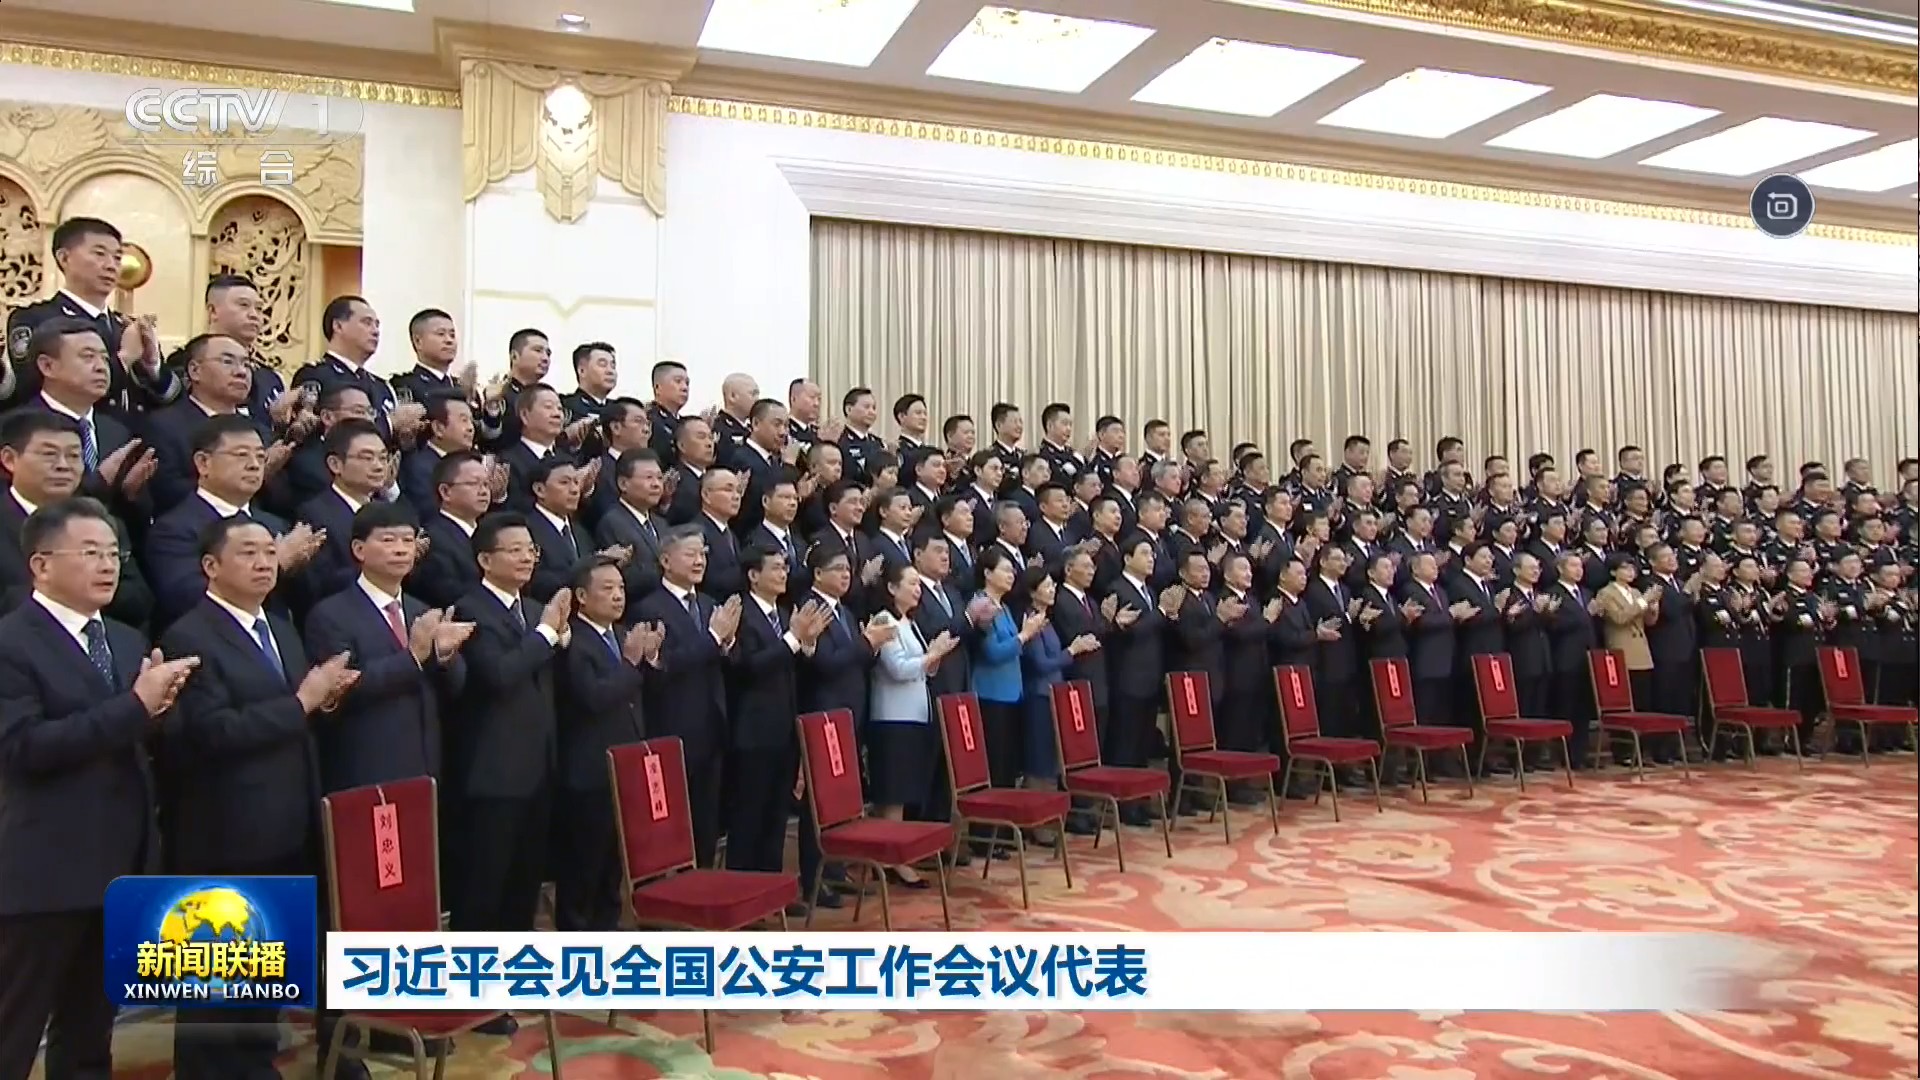 中央电视台CCTV-1综合频道 新闻联播 习近平会见全国公安工作会议代表